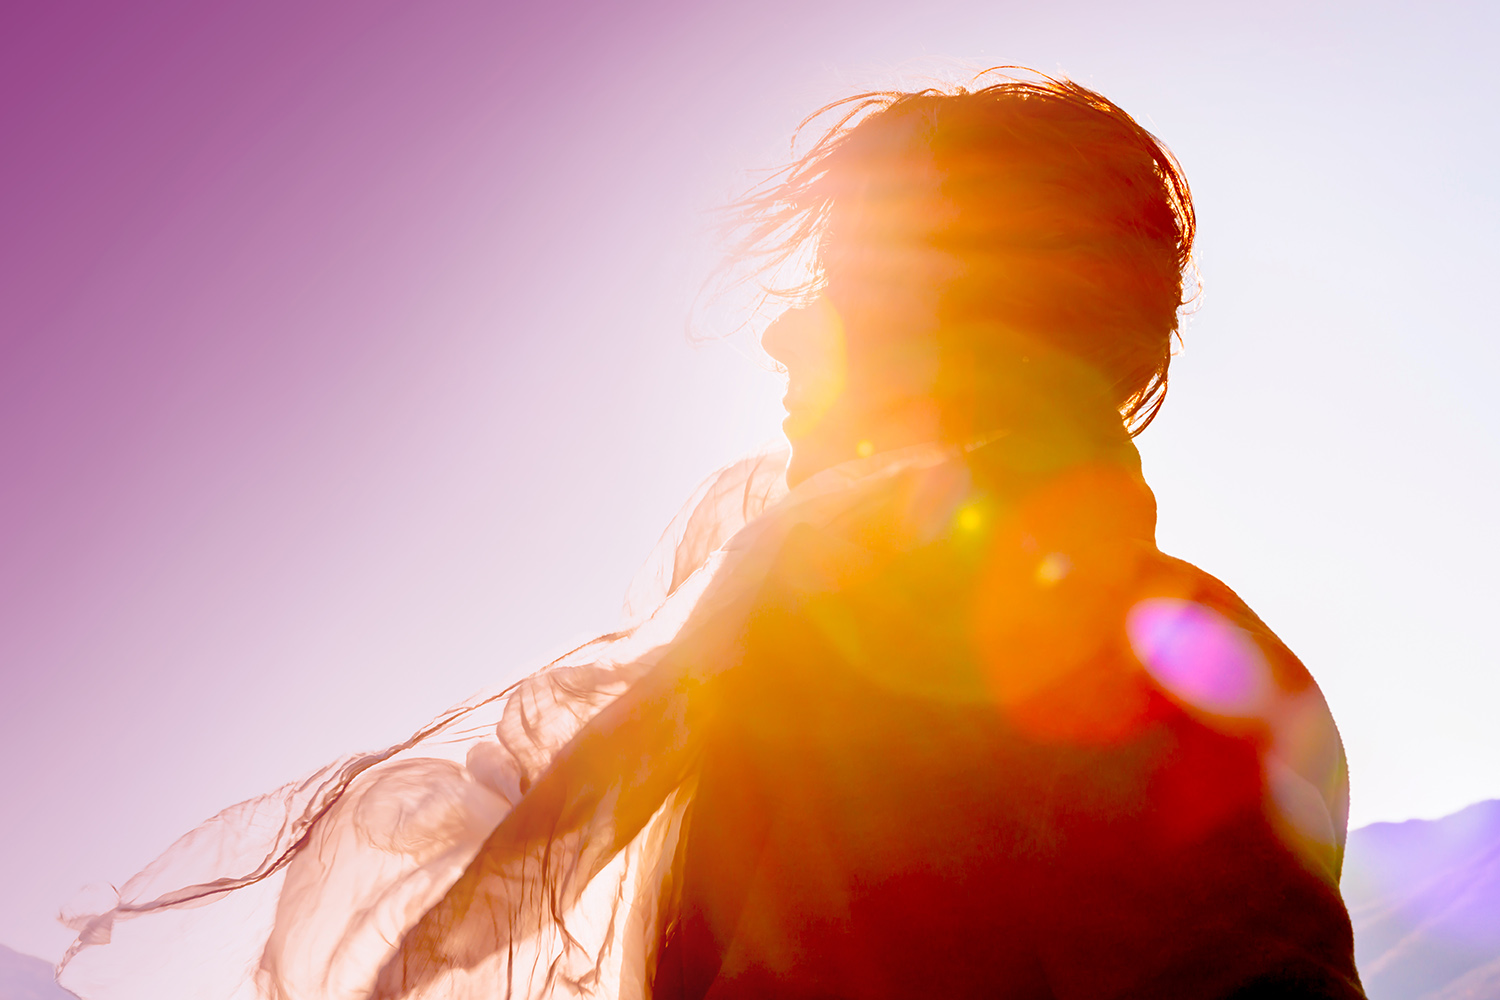 Das Bild zeigt eine Frau, die im Gegenlicht der Sonne steht